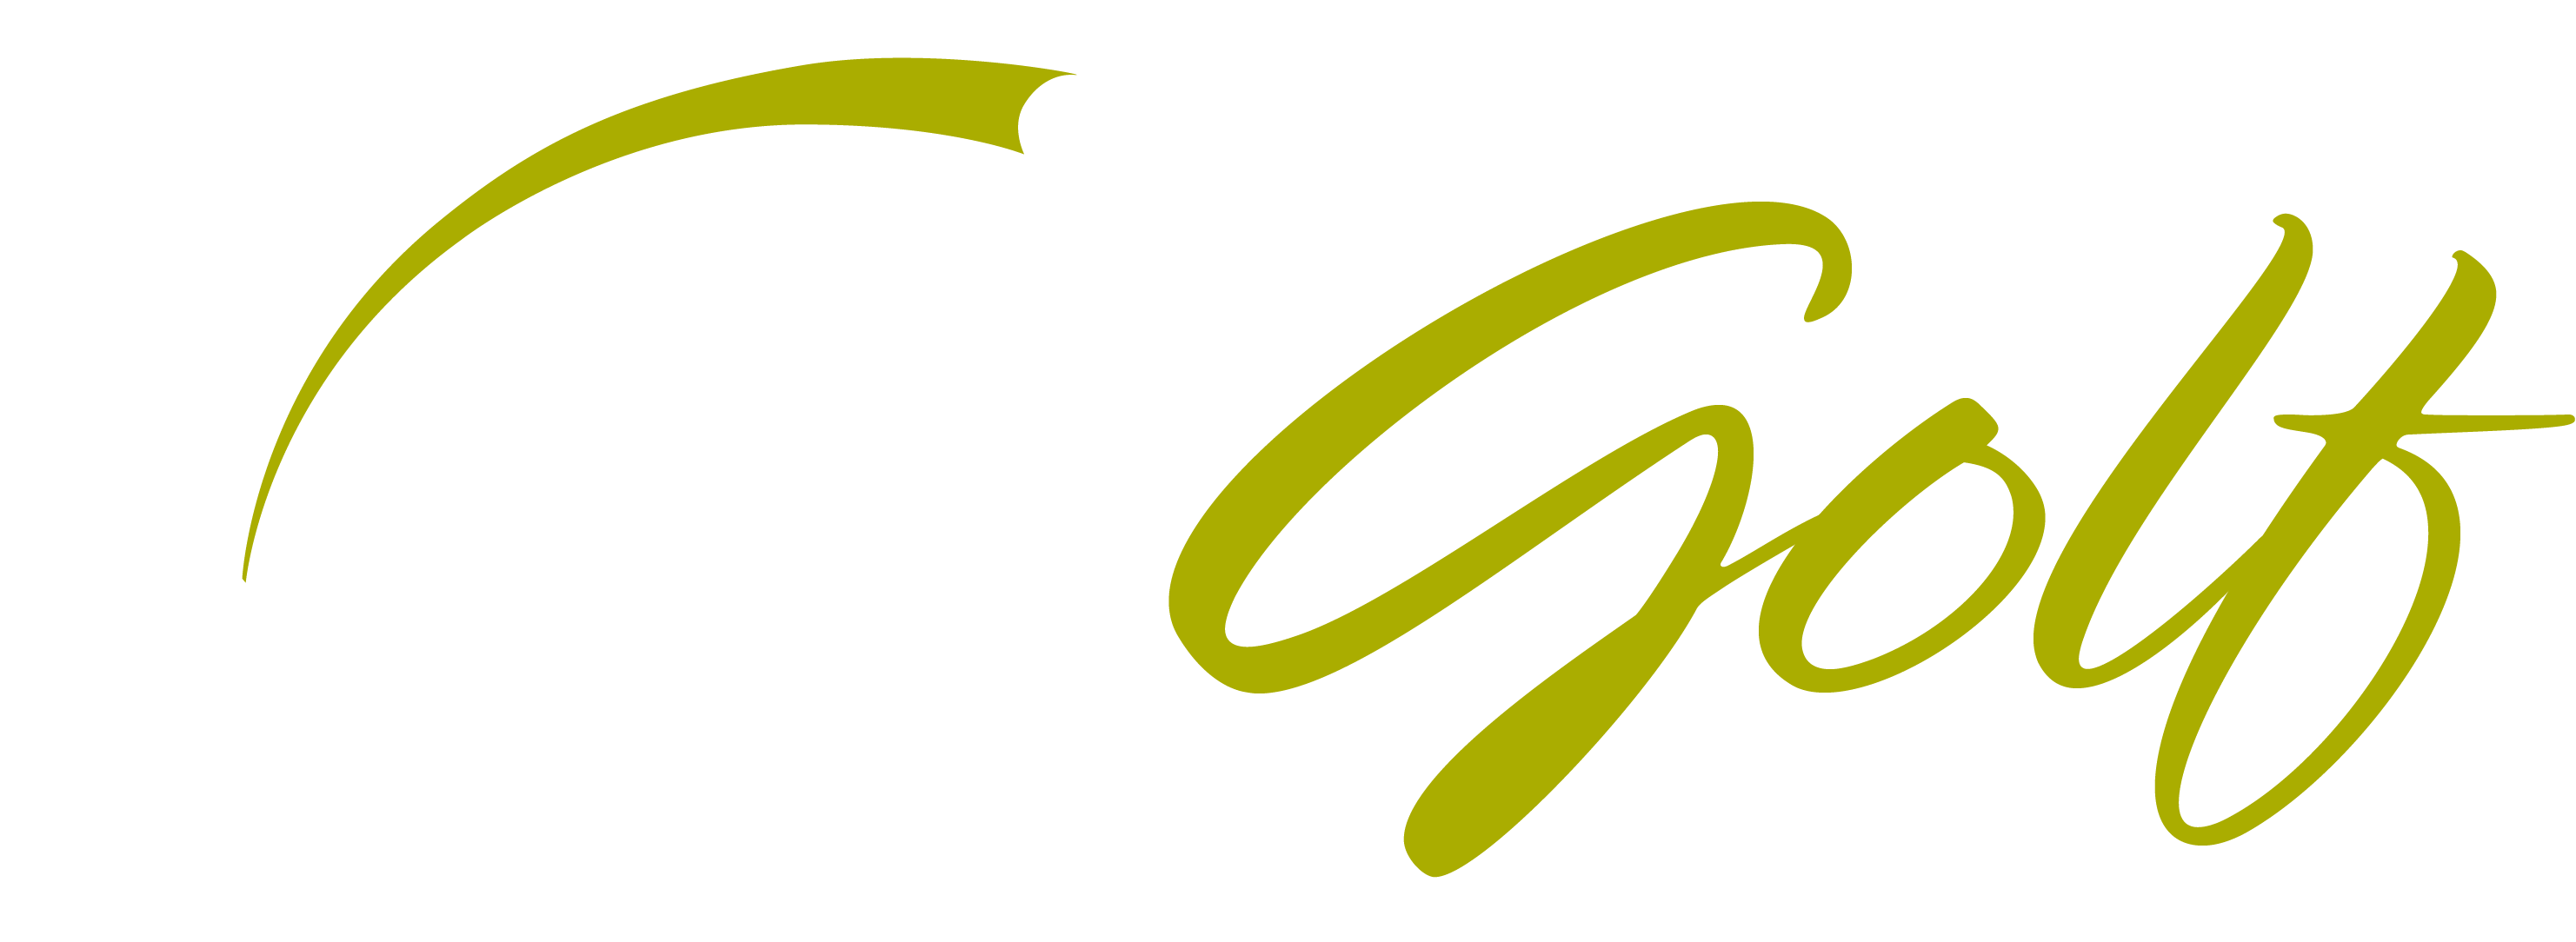 Oki Golf logo